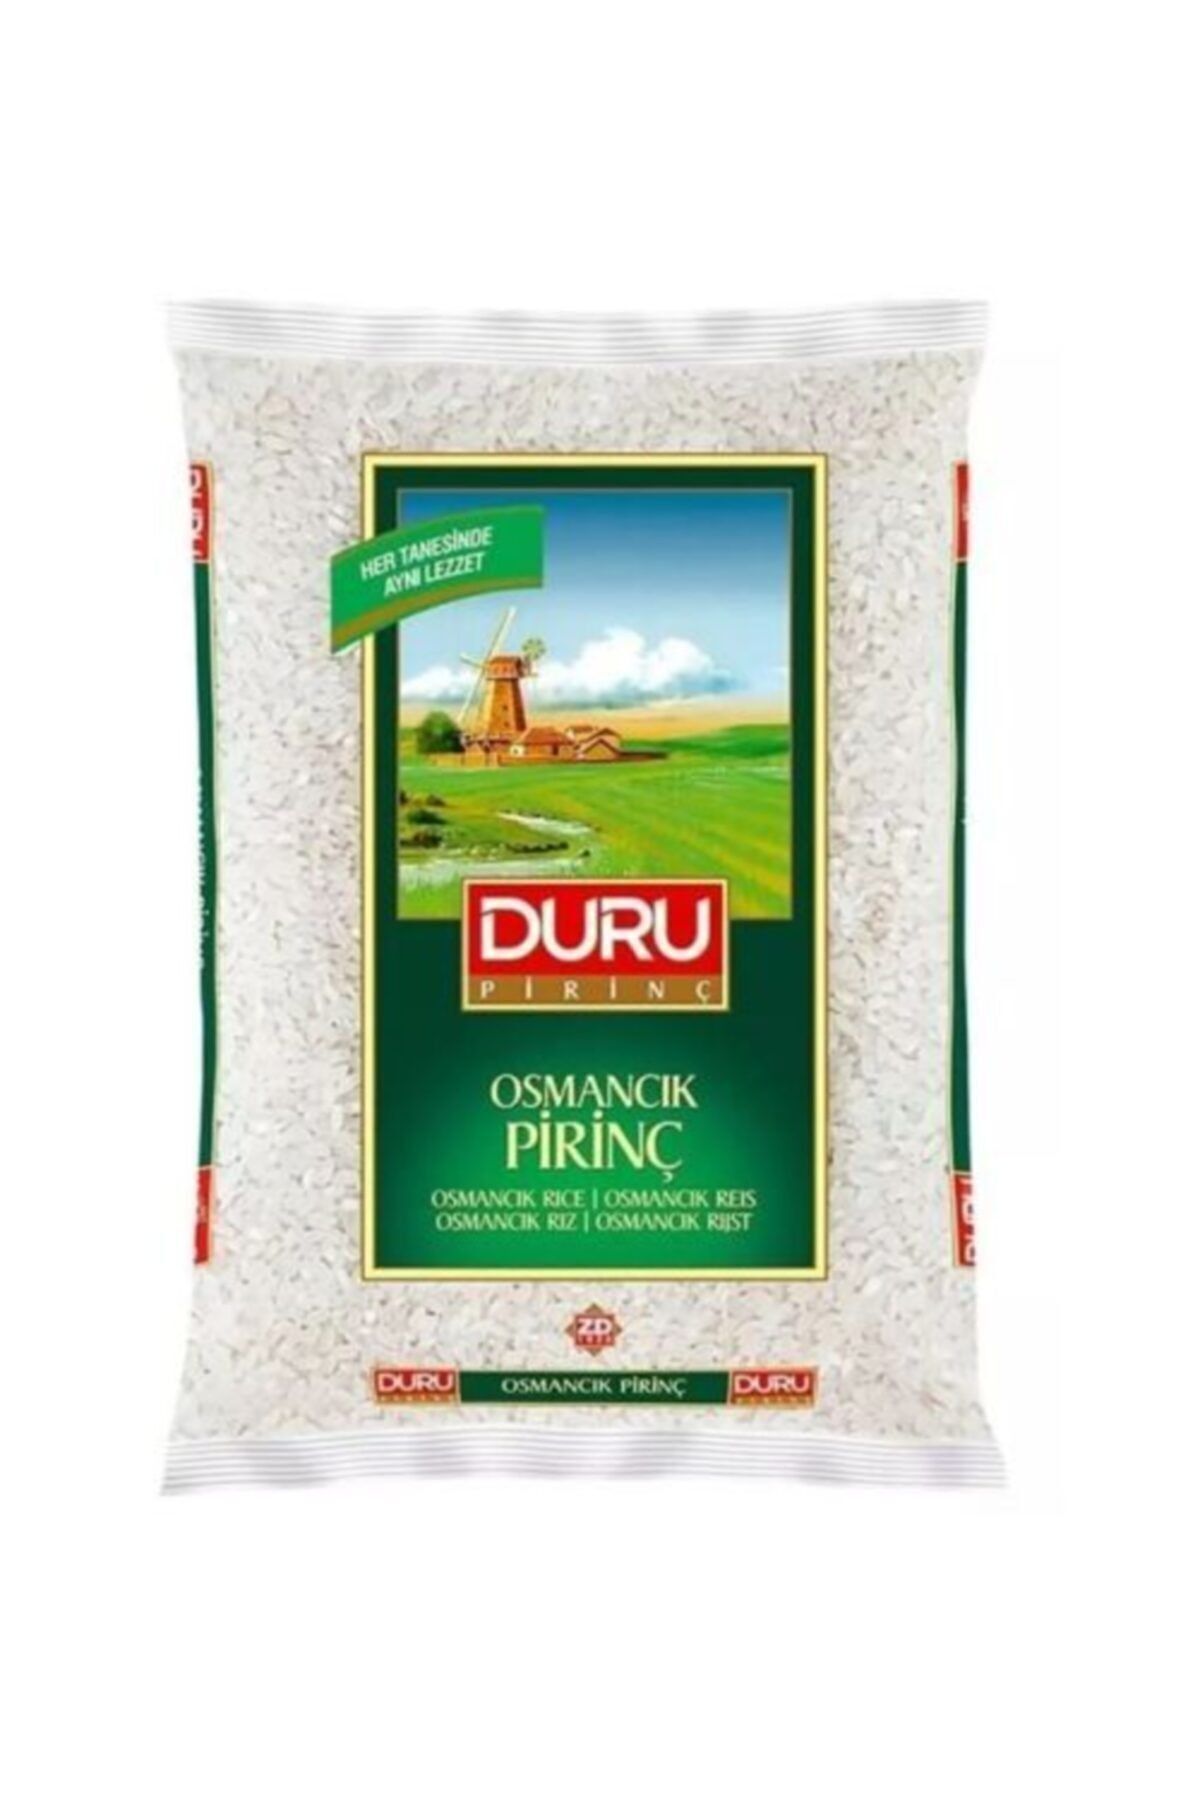 Duru Osmancık Pirinç 5 Kg